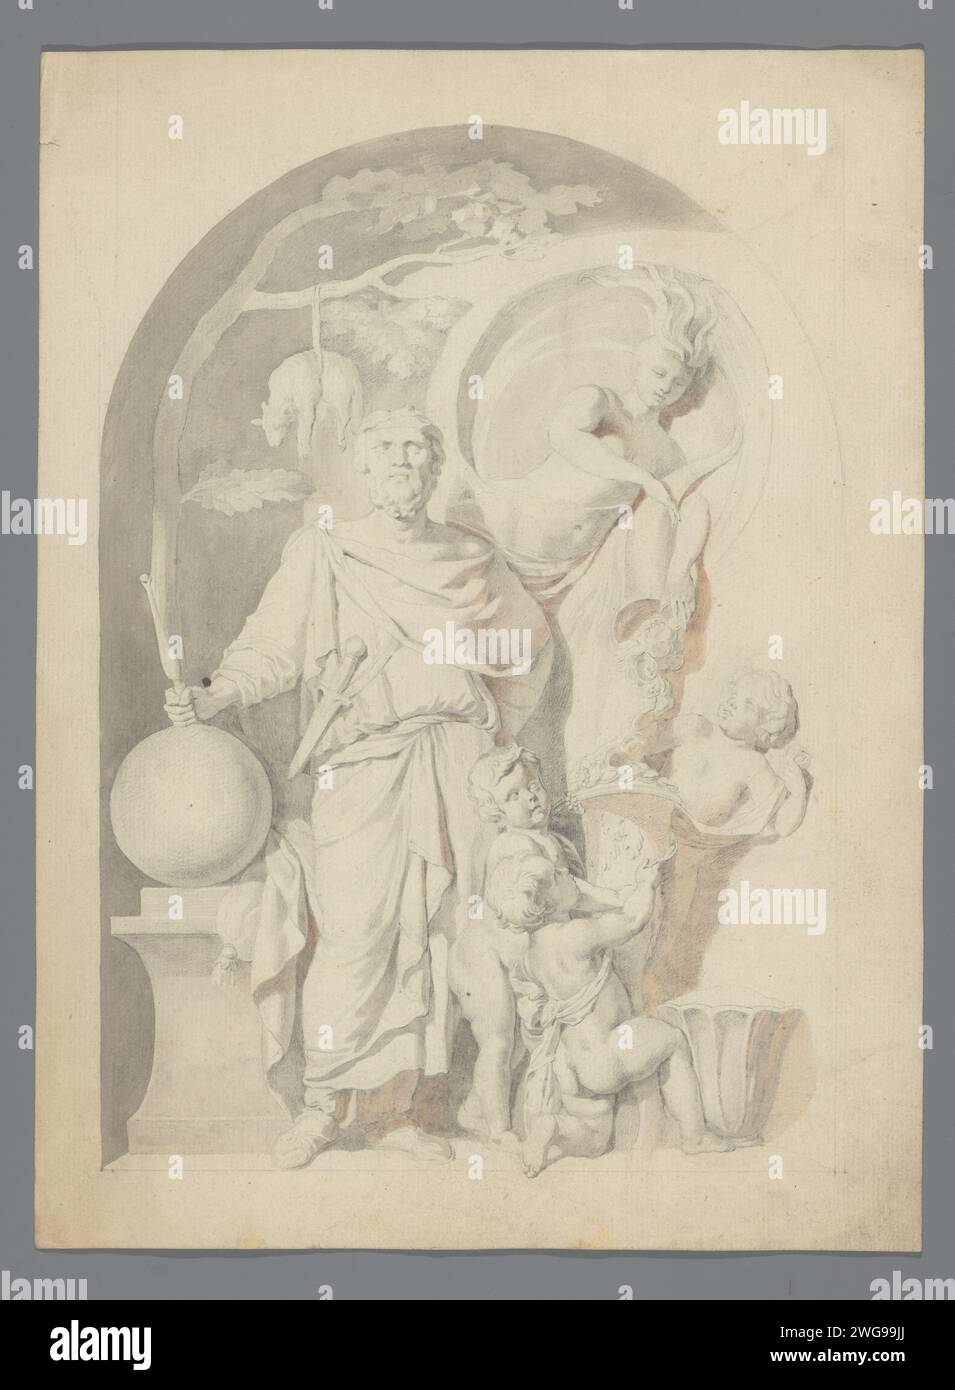 Allegoria sulla ricchezza o abbondanza, Anonimo, dopo Gerard de Lairesse, 1651 - 1761 carta da disegno. Pennello a matita il pile dorato, appeso a un albero di quercia, è così secondo da Jason. Ricchezza, opulenza; "Opulenza", "richezza" (maturo). Abbondanza; "abondanza", "abondanza Maritima" (ripa) Foto Stock